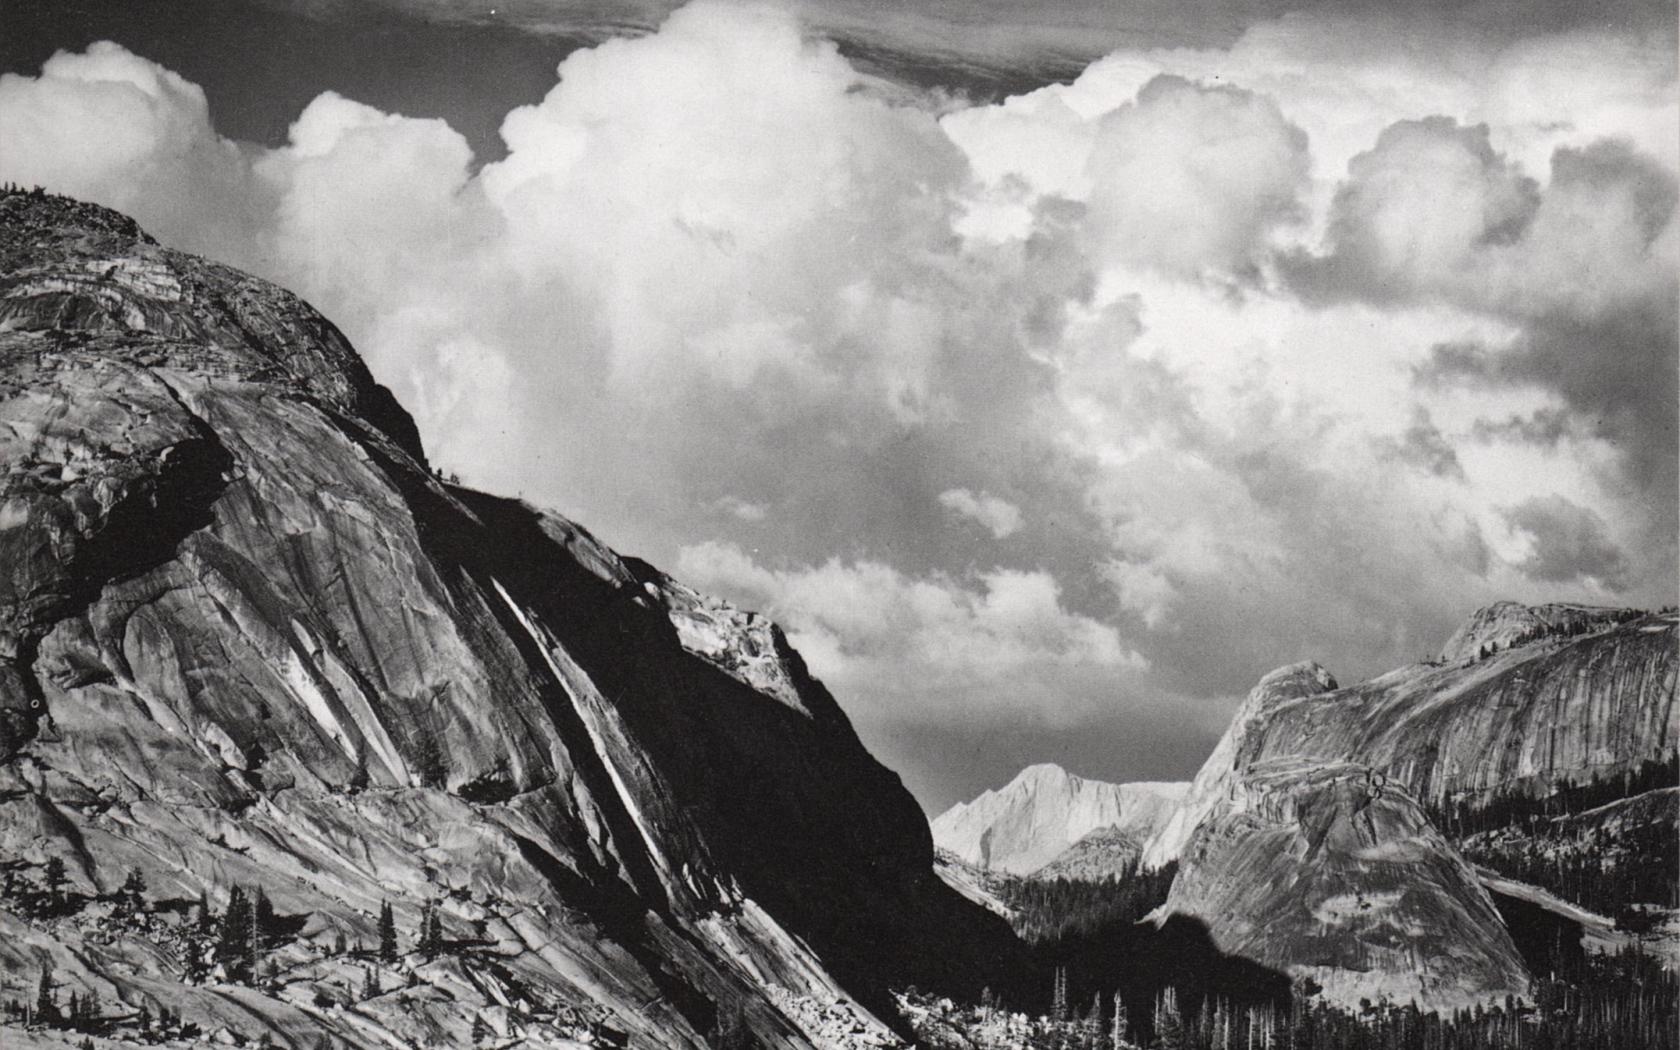 ansel adams fond d'écran,montagne,noir et blanc,ciel,chaîne de montagnes,photographie monochrome